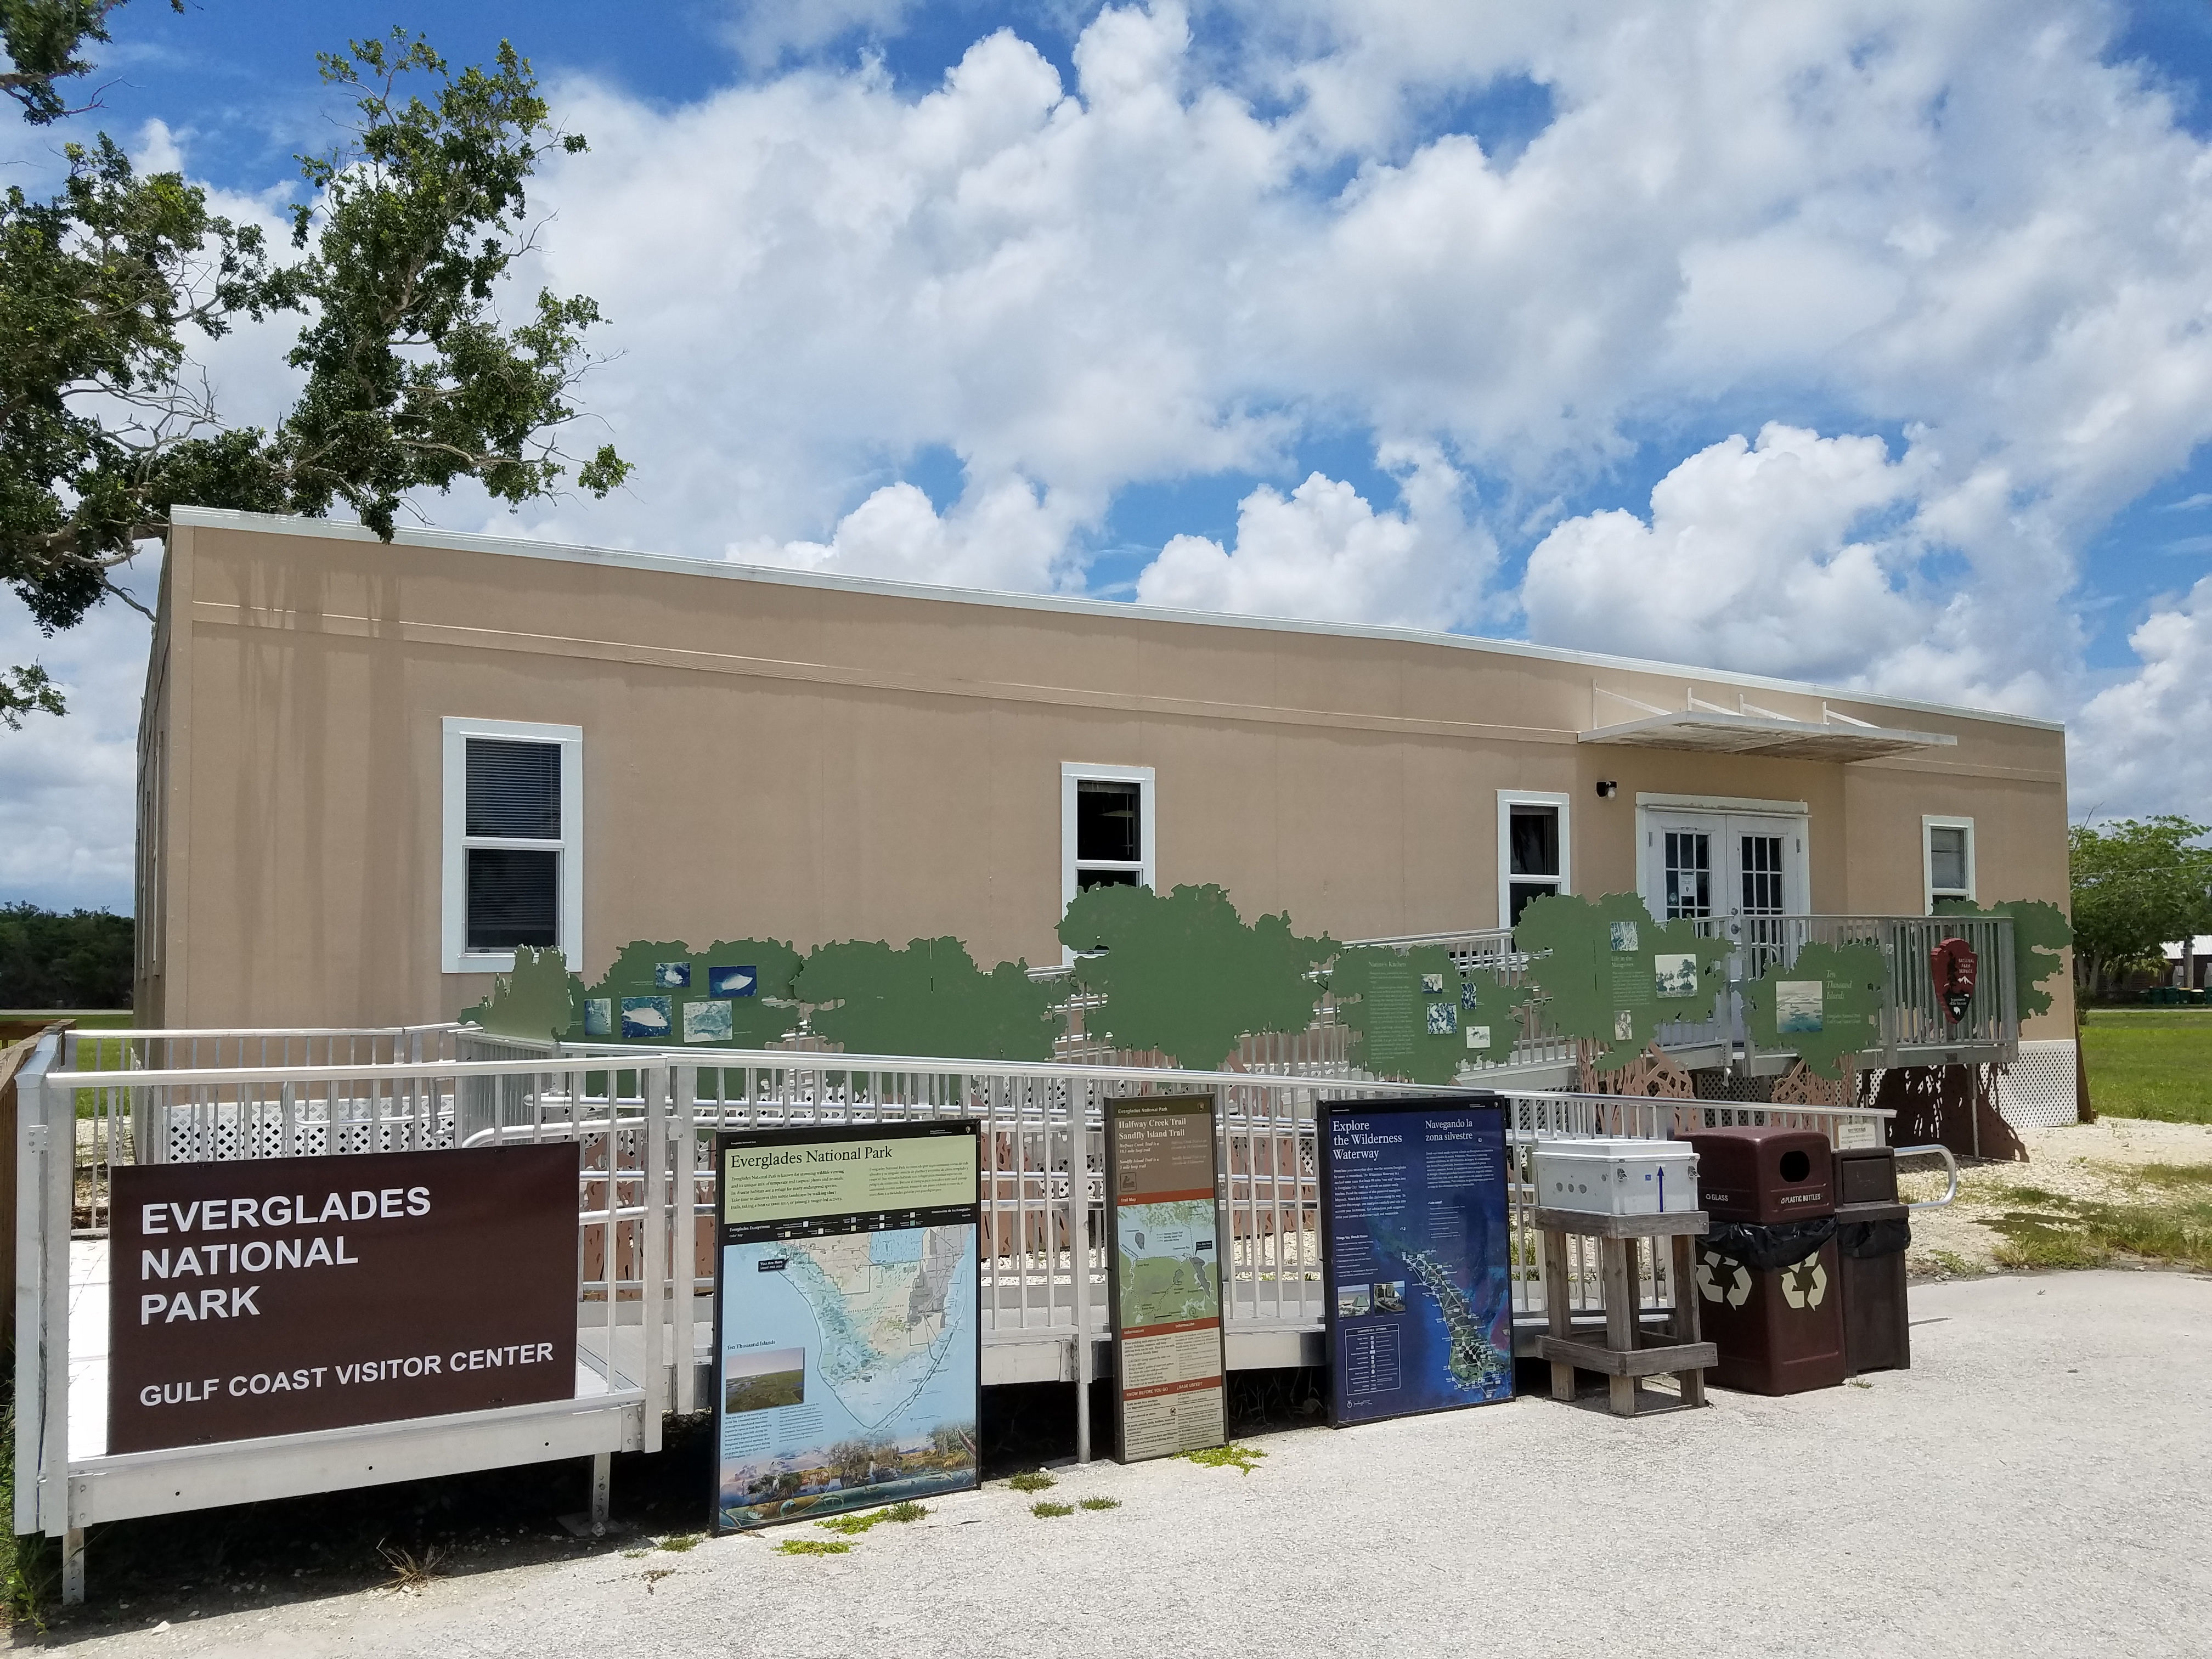 Gulf Coast Visitor Center – Everglades National Park (U.S. National Park Service)